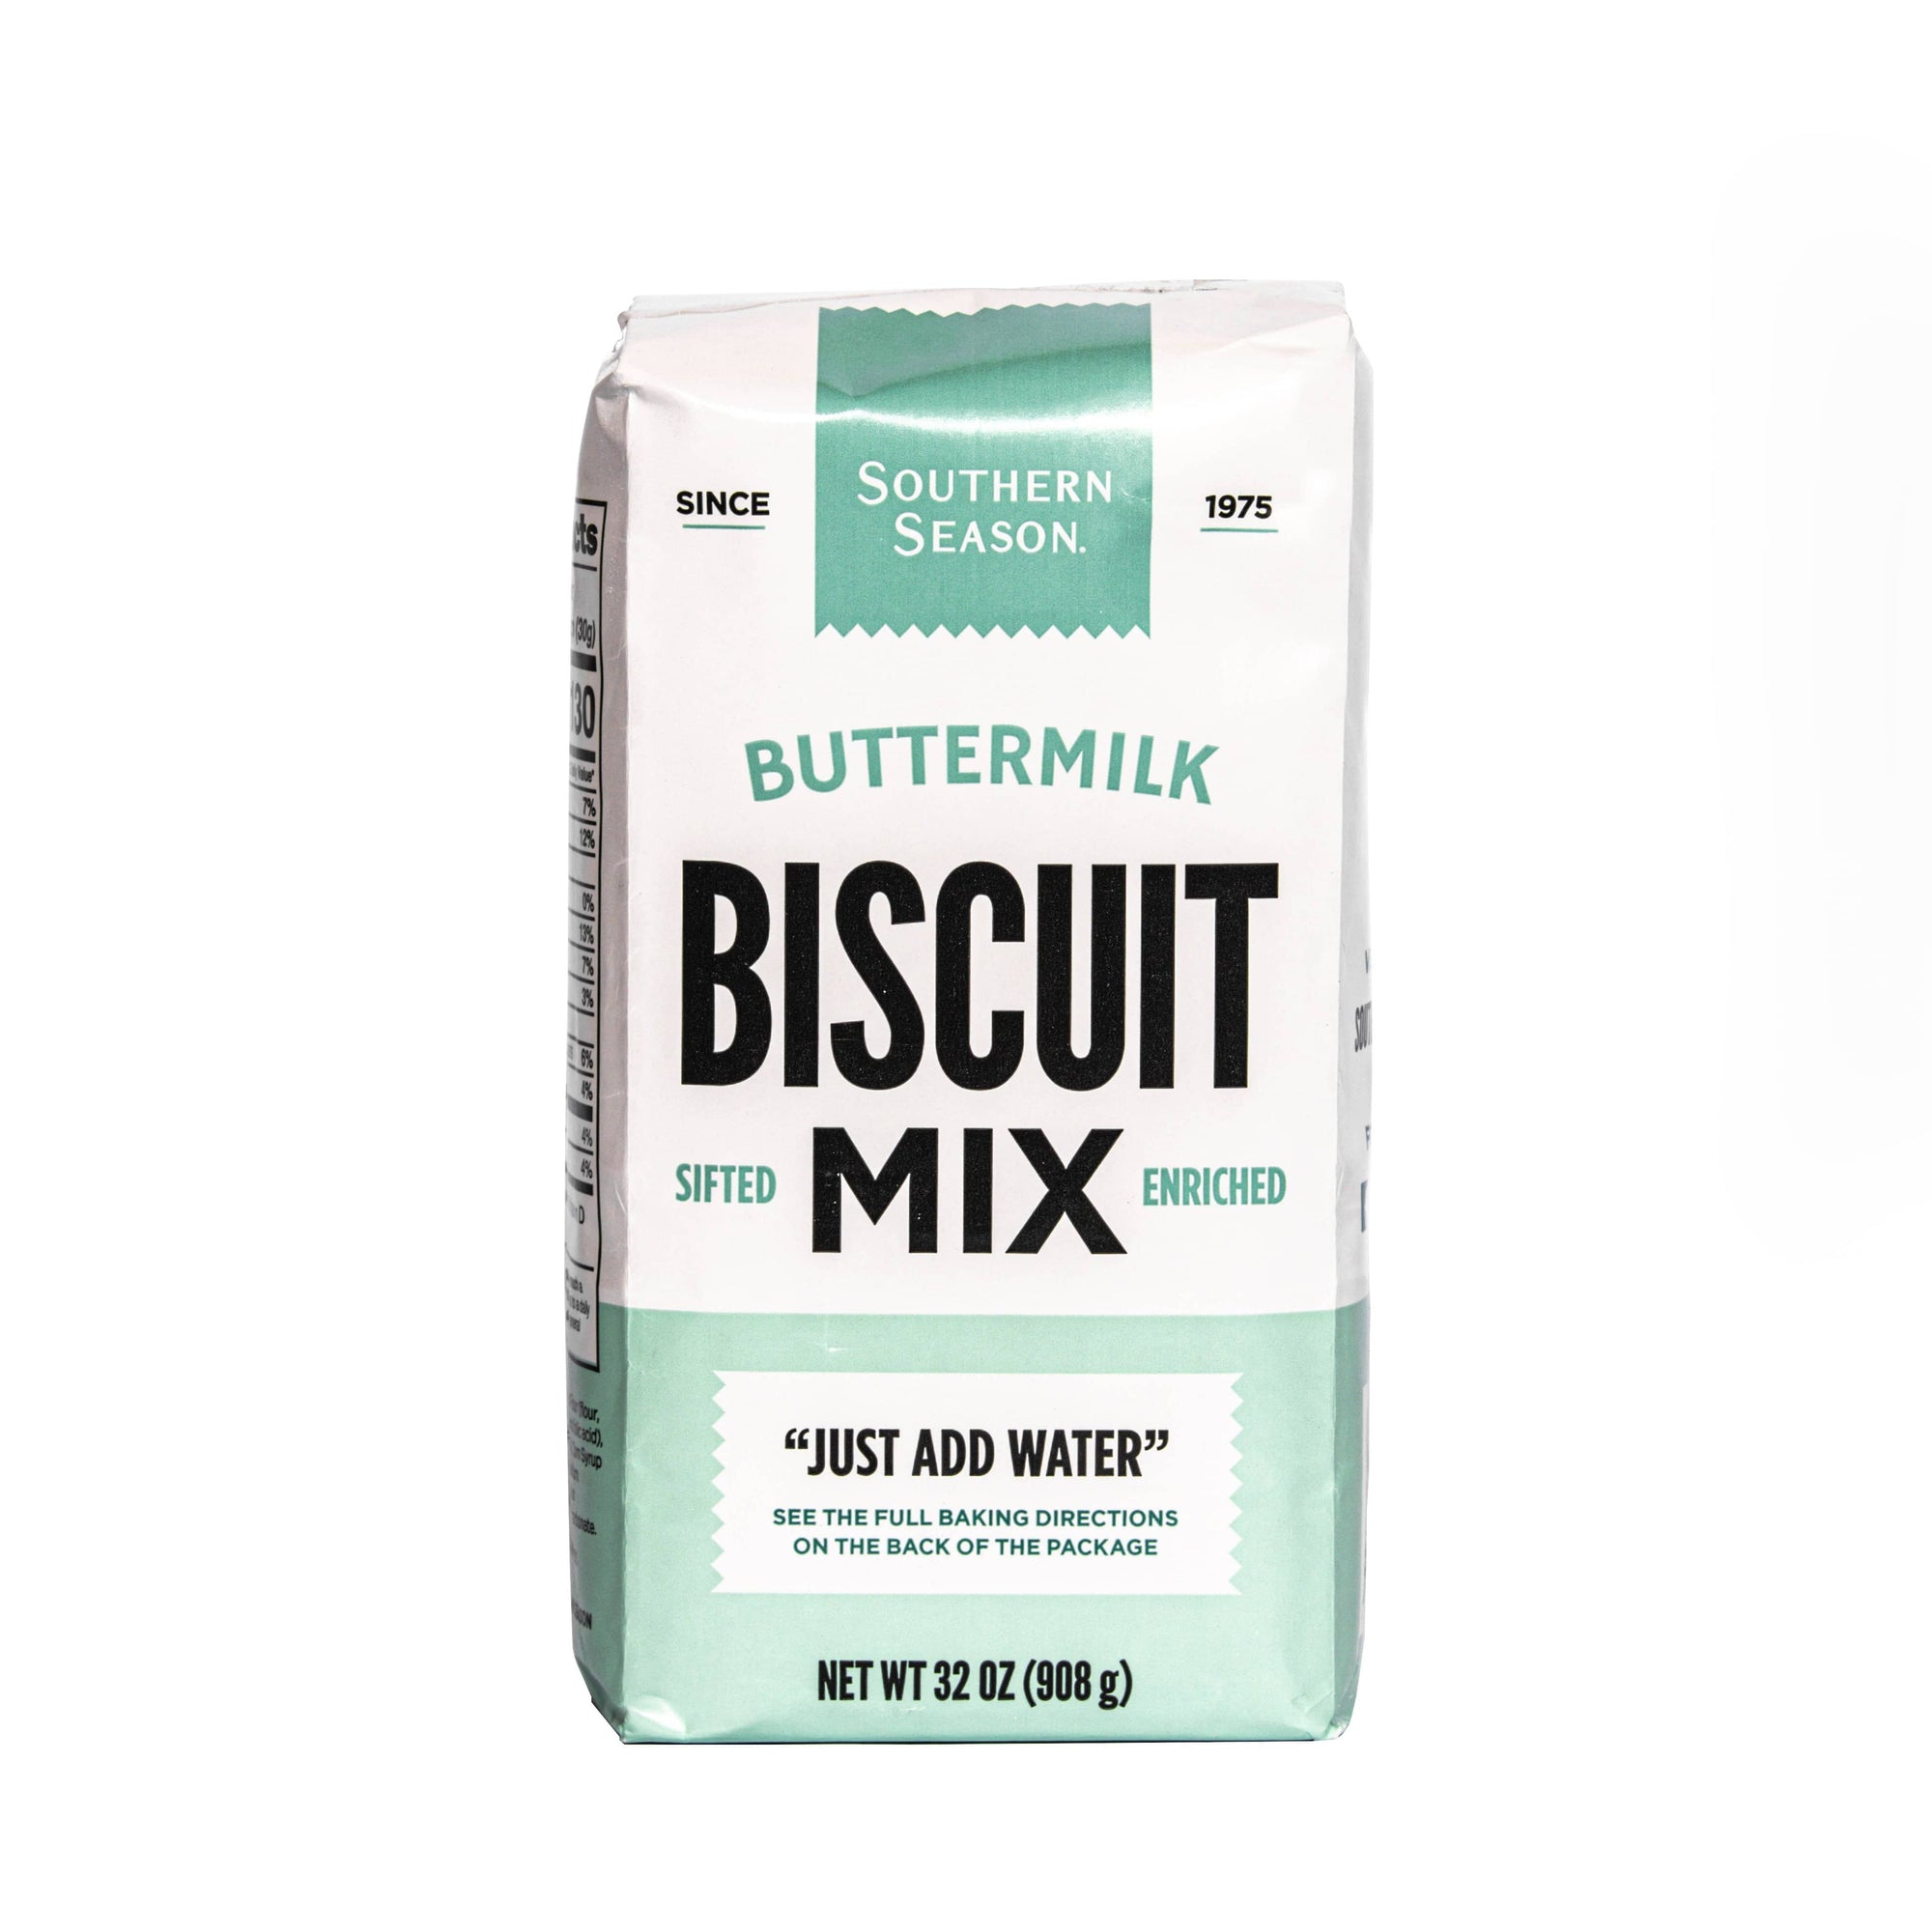 Southern Season Southern Season Buttermilk Biscuit Mix 2 lb